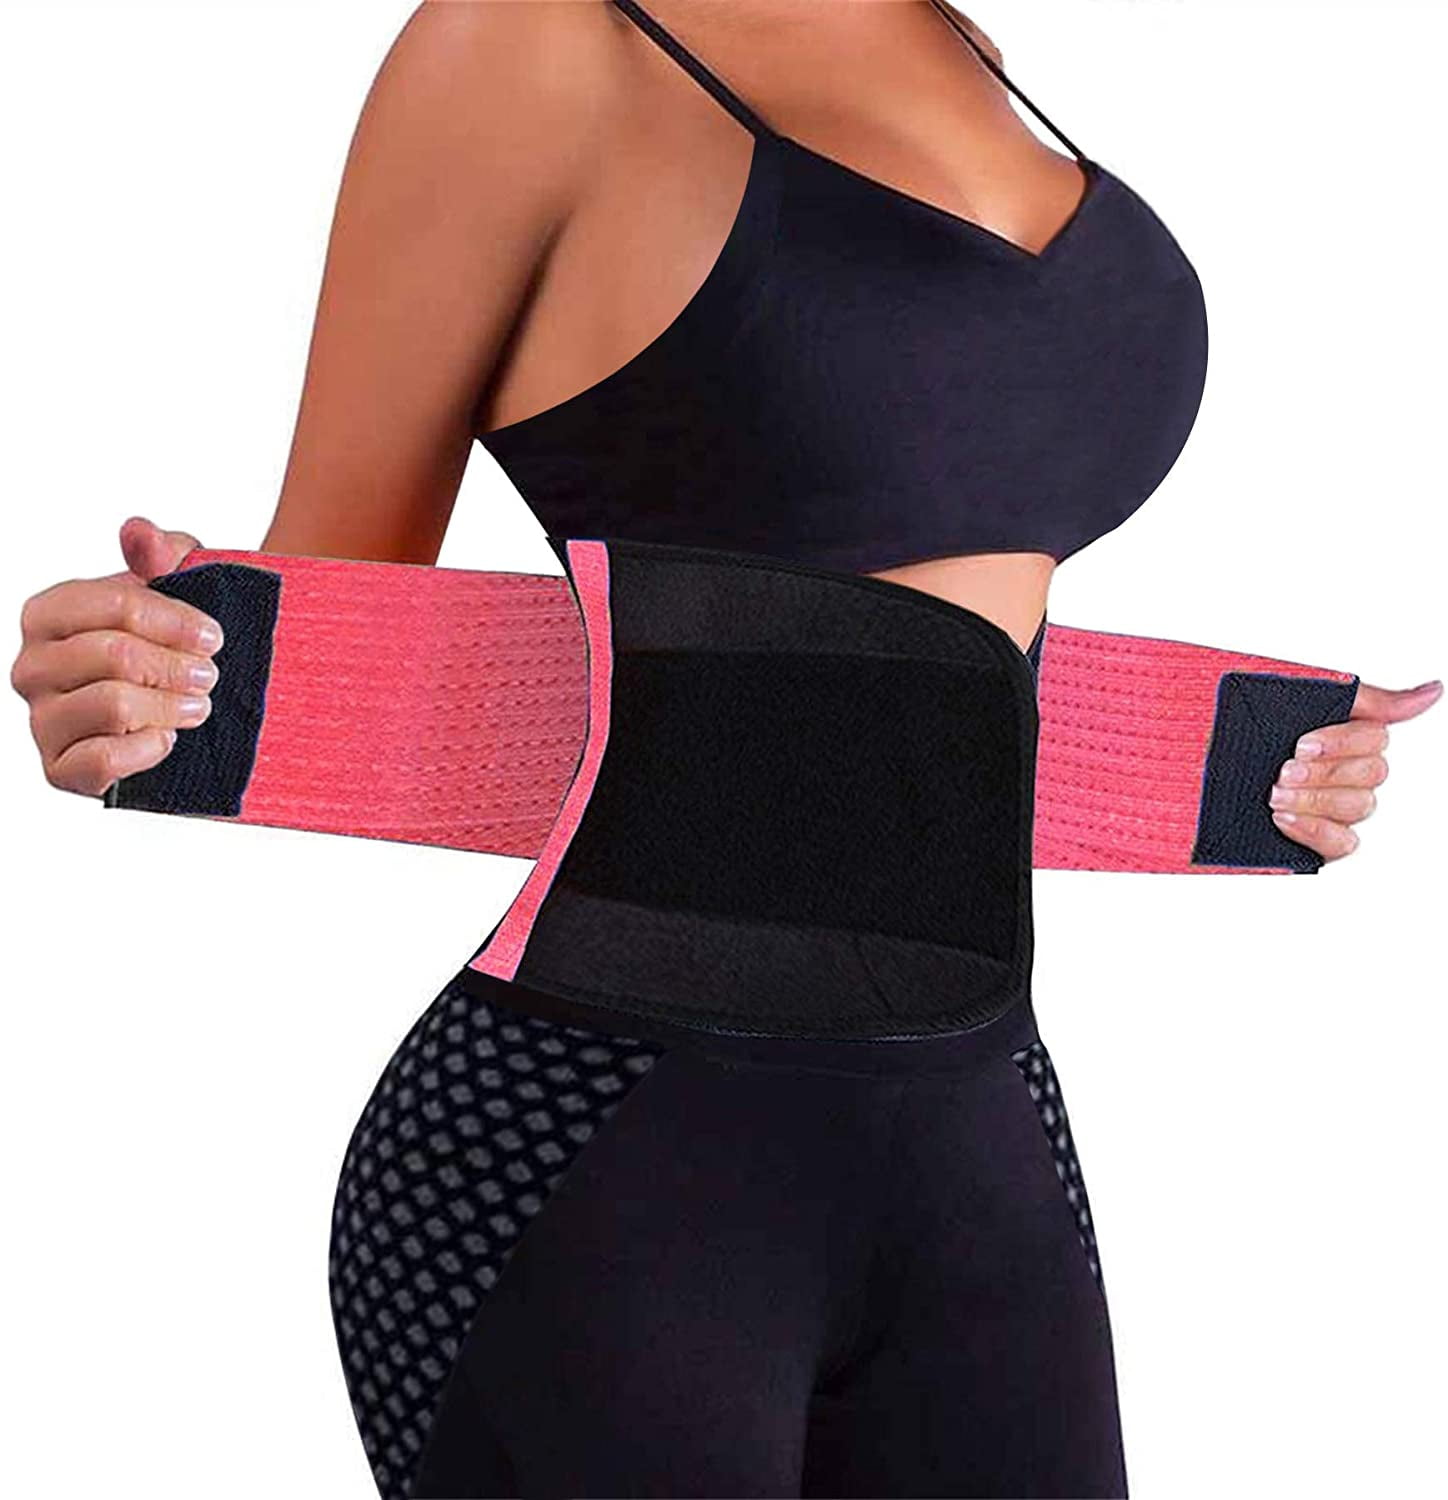 Womens Waist Trainer Body Shaper Belt Slimming Waist Trimmer Cincher for Weight Loss